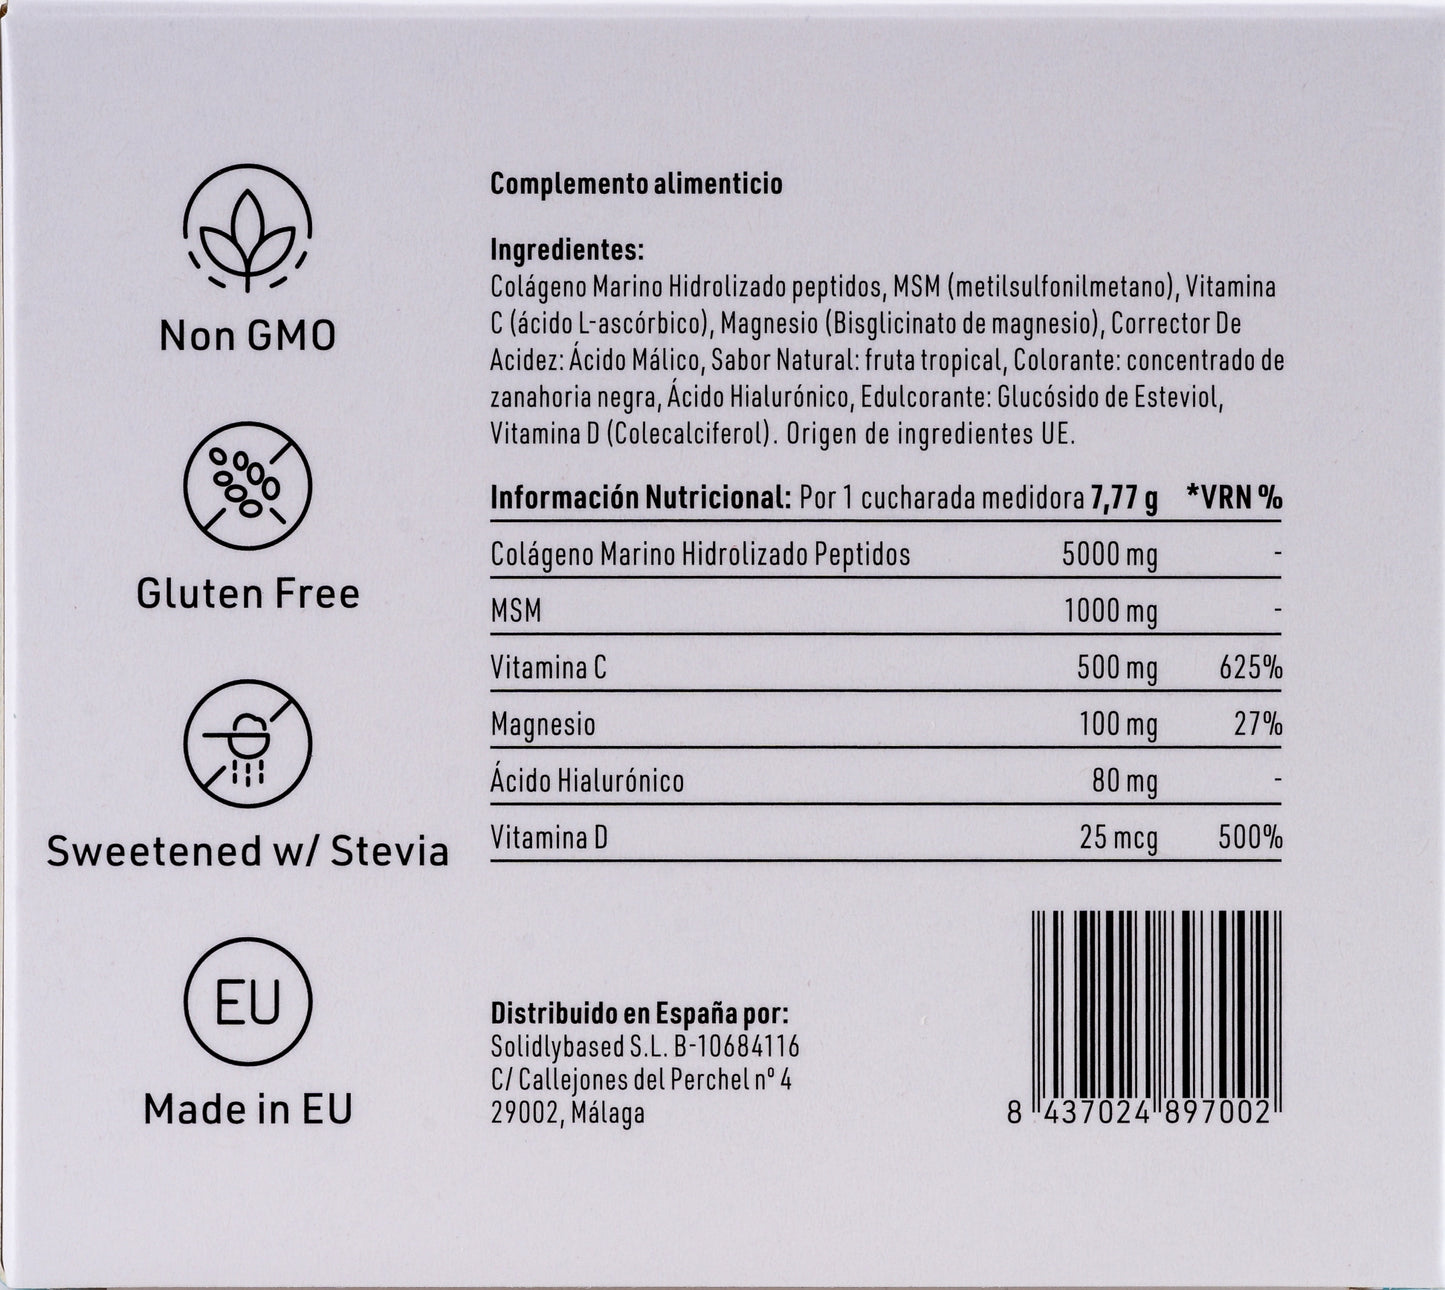 Pack 4 uds de colágeno - 15% de descuento *223 gr